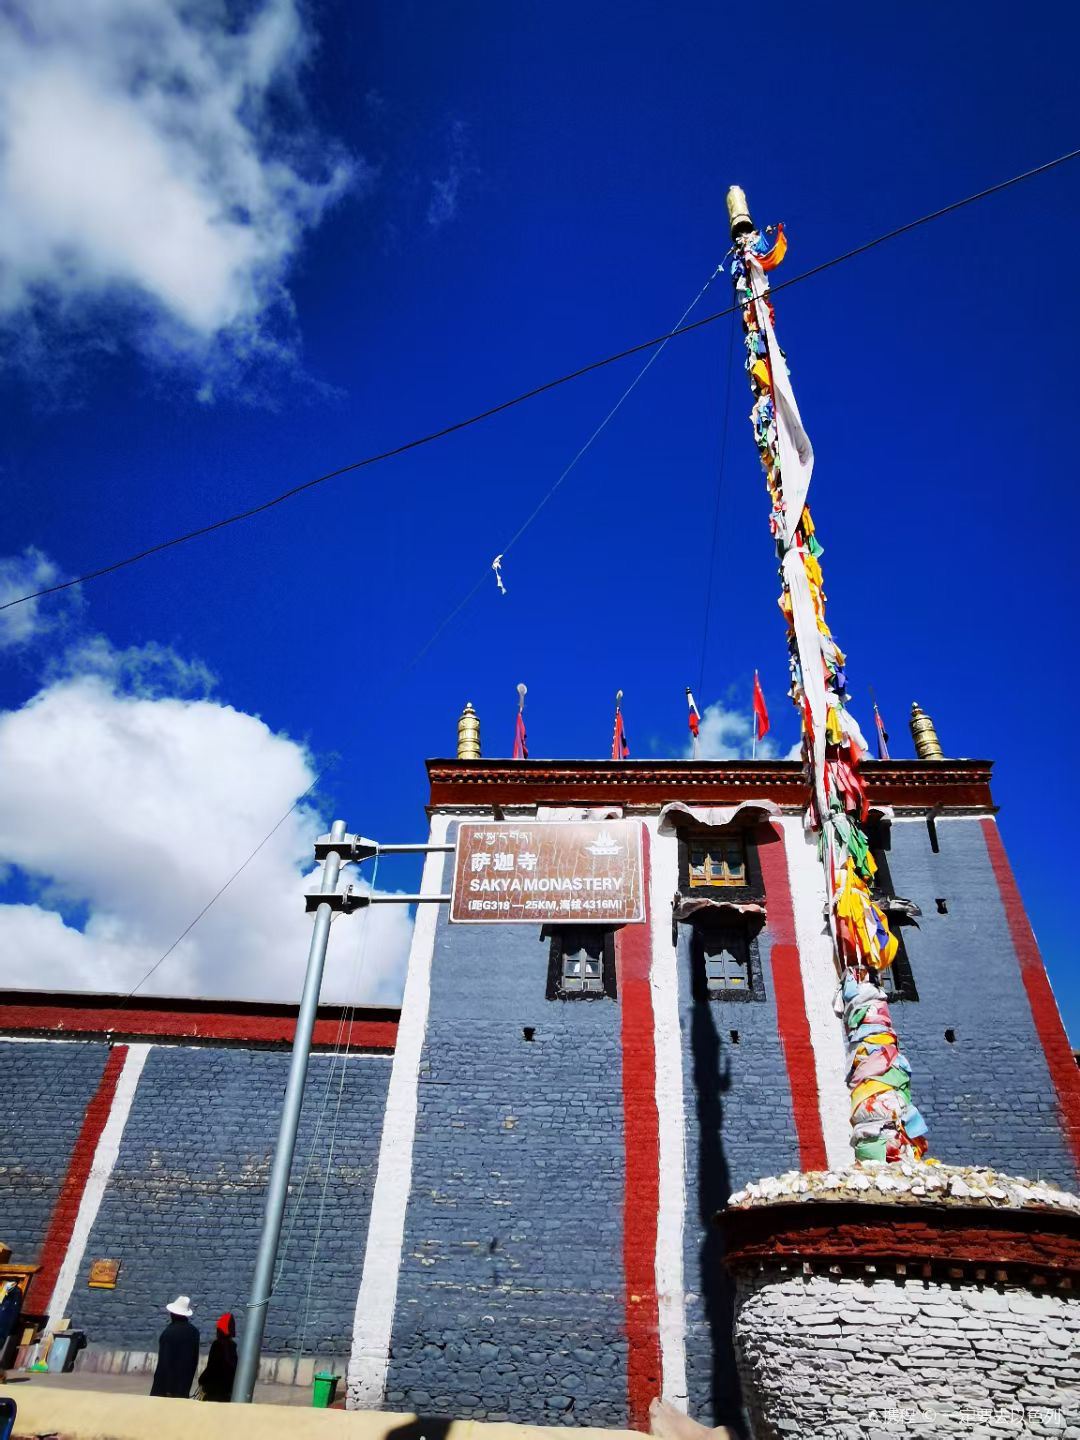 萨迦南寺于公元1268年由萨迦第五祖法王八斯巴所建，是藏传佛教萨迦派祖庭，更是统一吐蕃王朝后分散四百